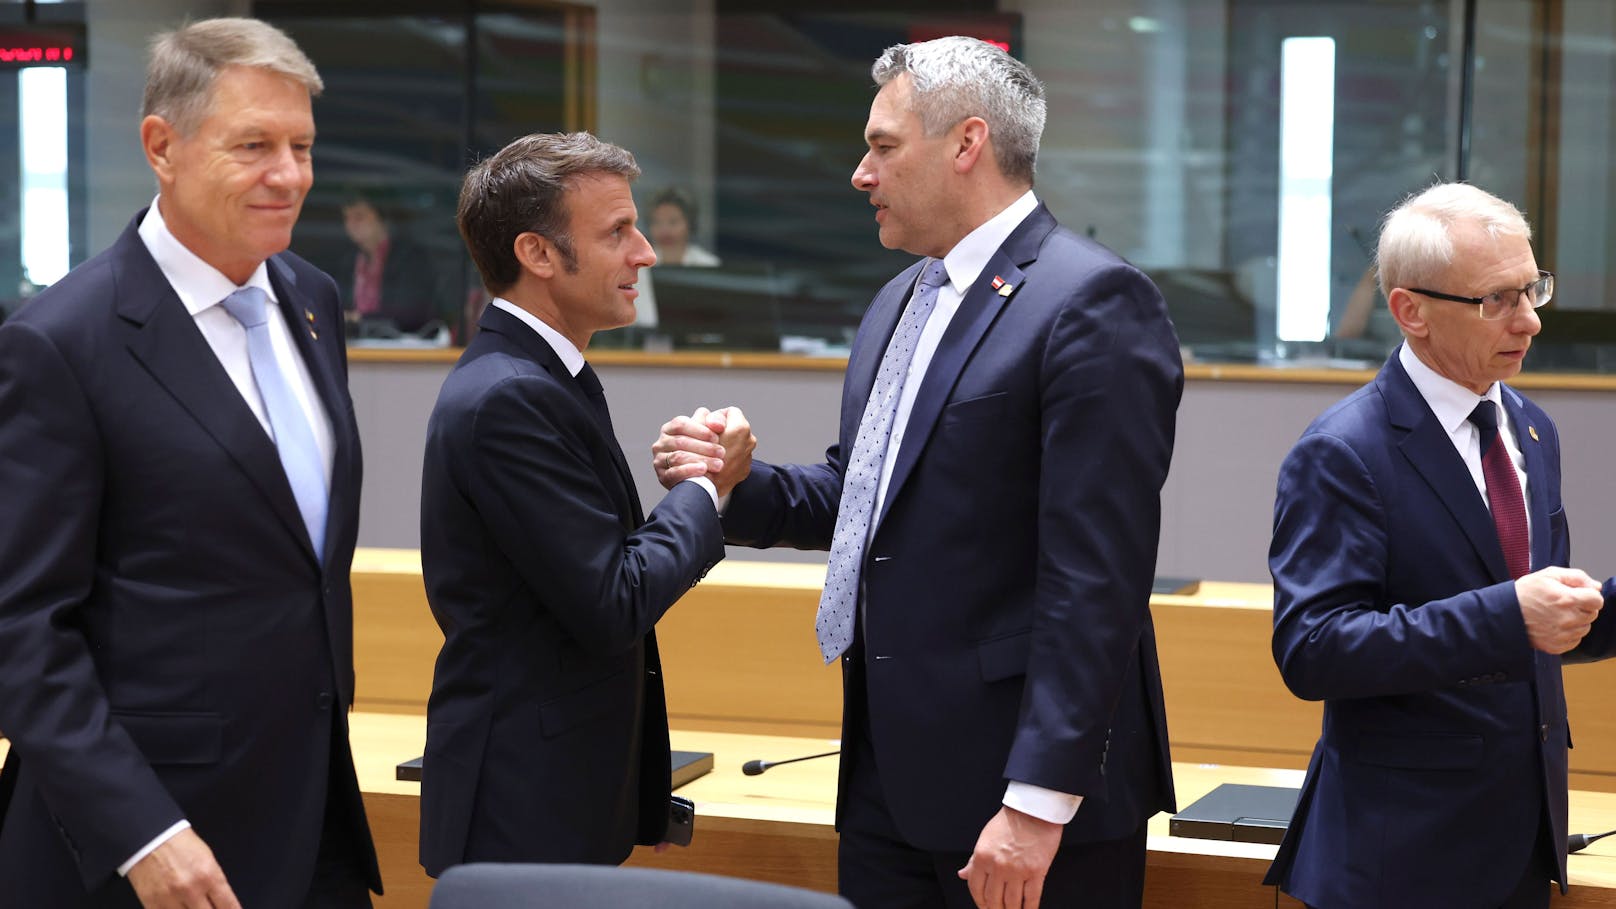 Am 17. Juli 2023 traf Nehammer Macron im Rahmen des Gipfel EU-CELAC (Gemeinschaft der Lateinamerikanischen und karibischen Staaten) in Brüssel. Der brüderliche Handschlag dürfte kraftvoller vonstattengegangen sein.